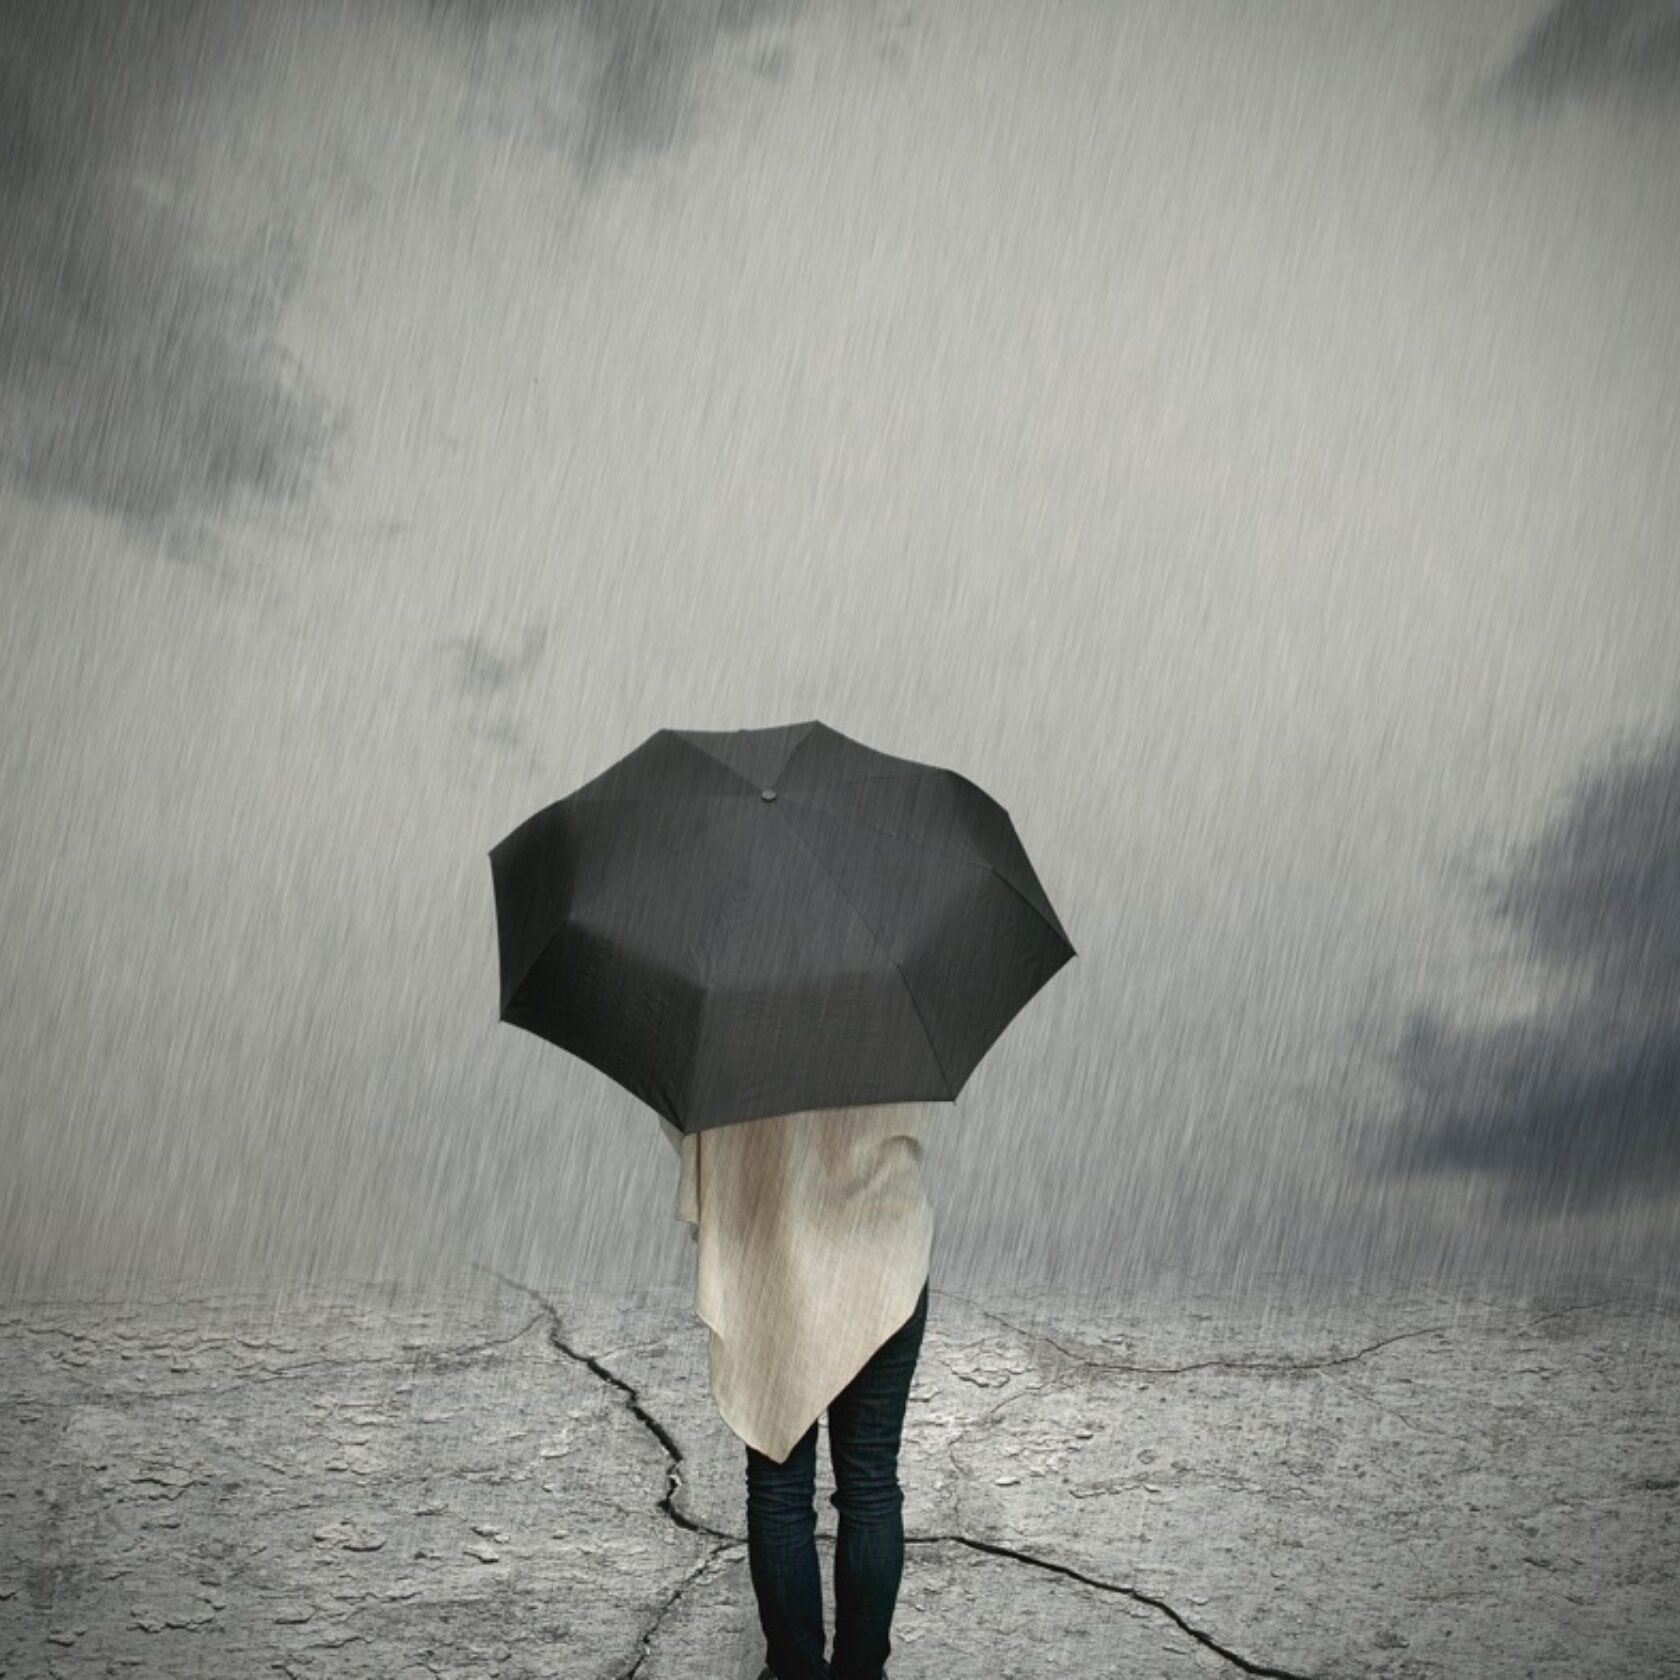 Trübes Regenwetter Person mit schwarzem Regenschirm